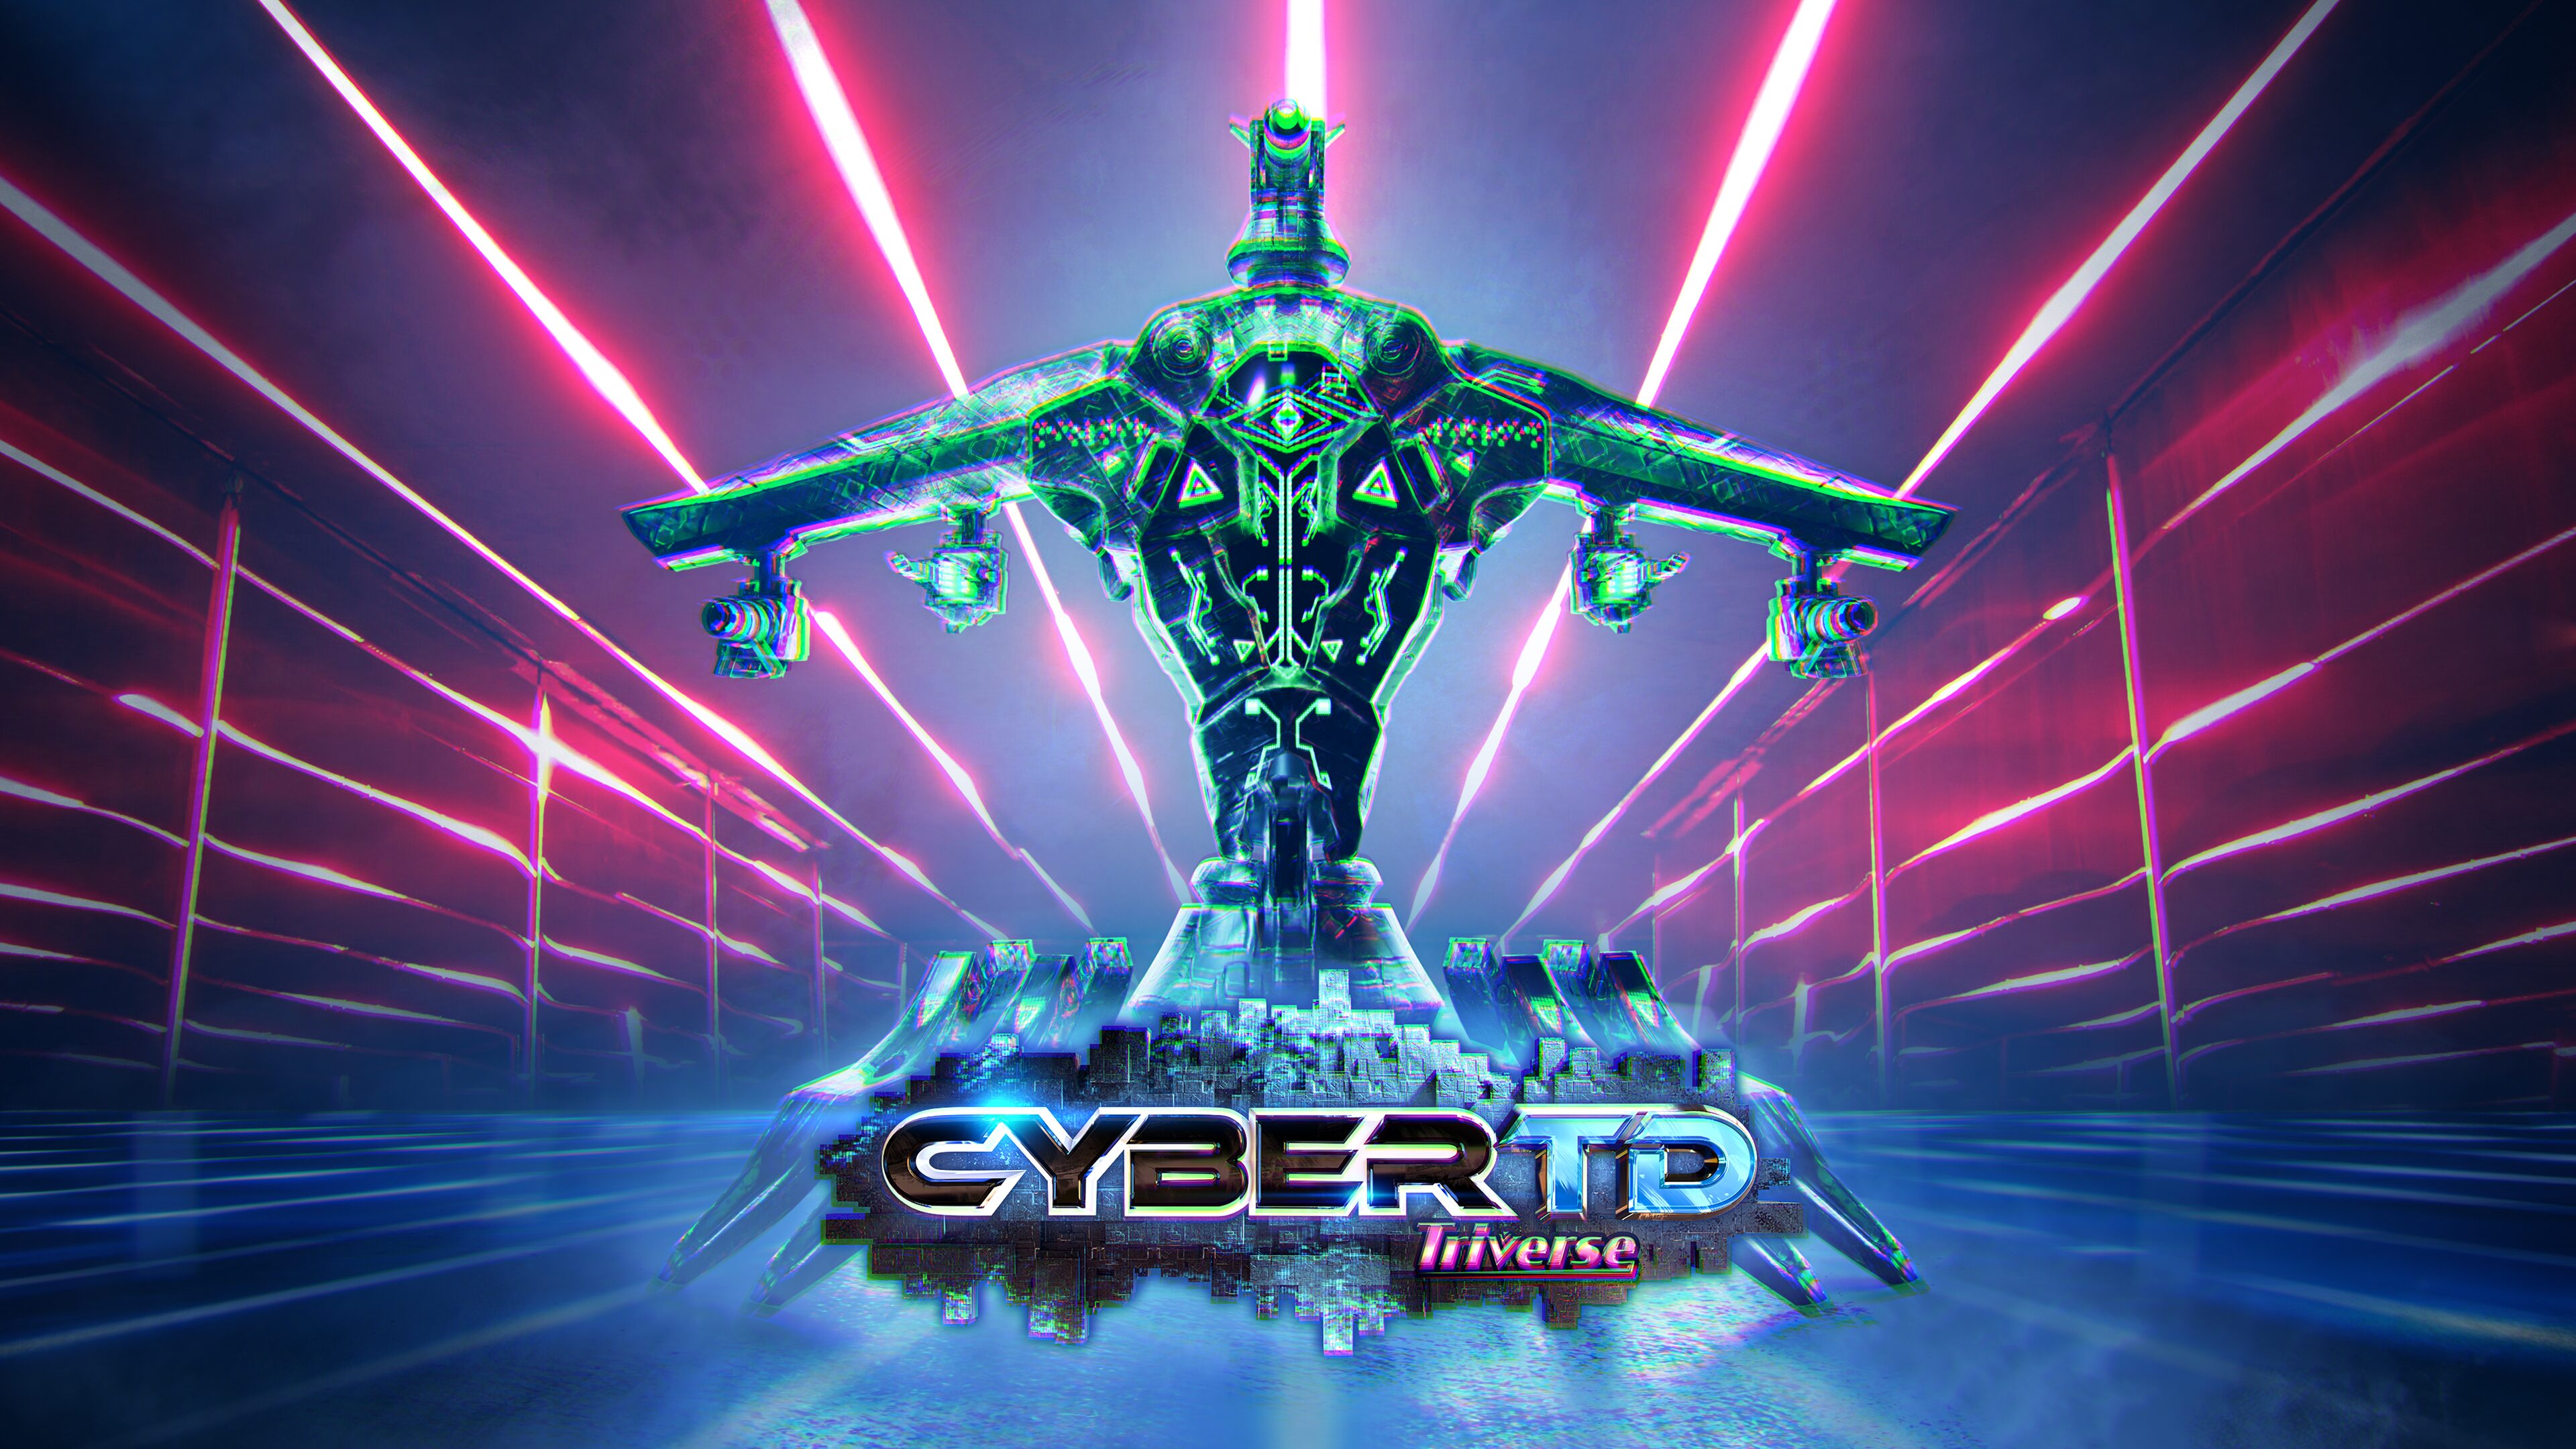 CyberTD for ios instal